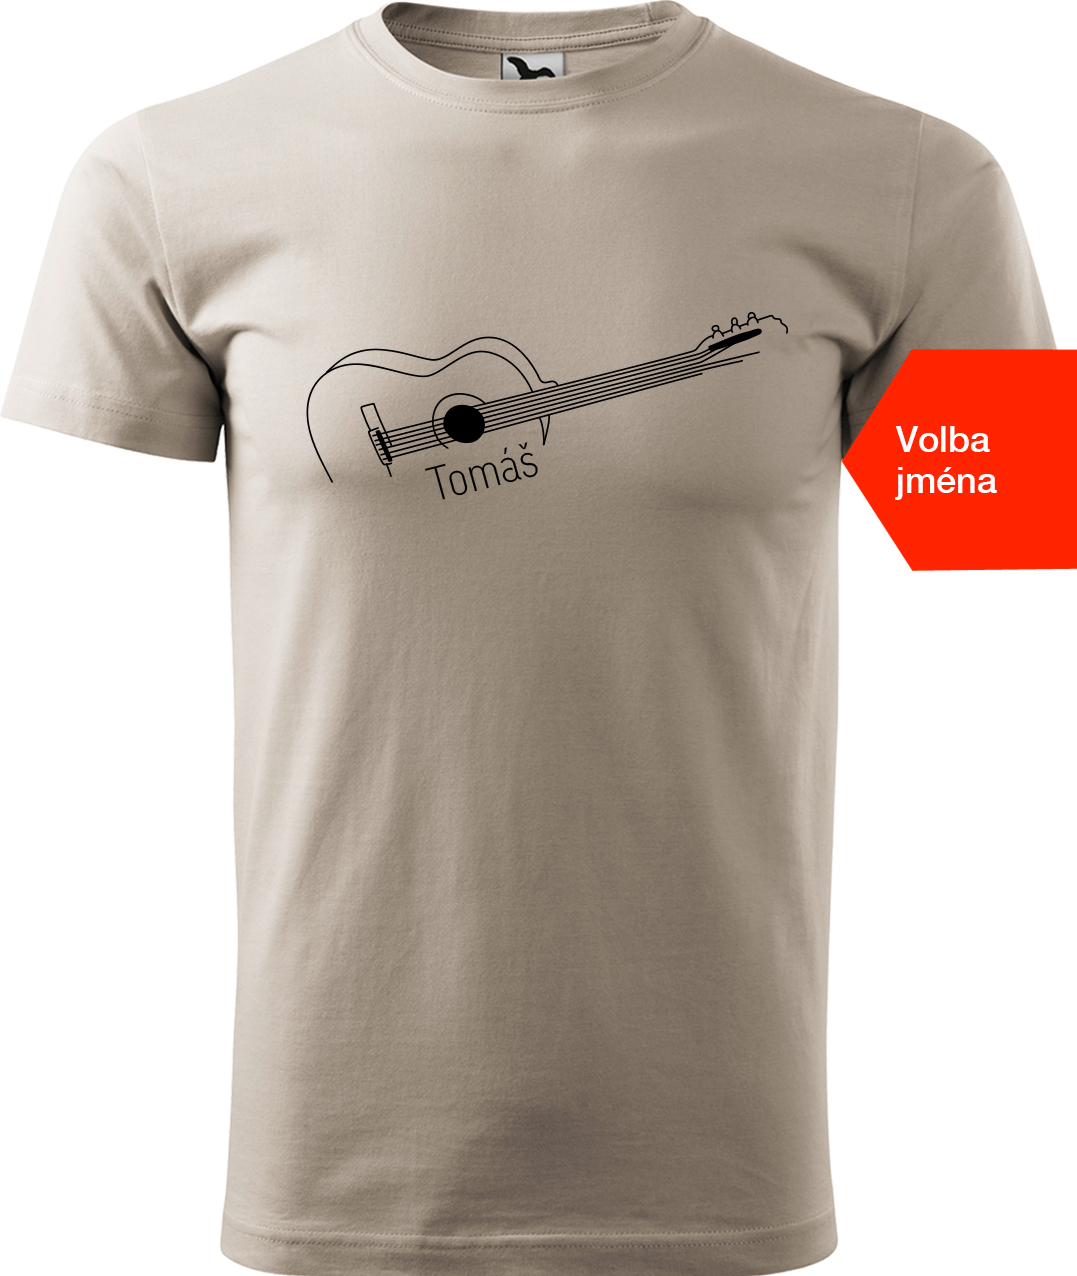 Pánské tričko s kytarou se jménem - Stylizovaná kytara Velikost: XL, Barva: Ledově šedá (51), Střih: pánský